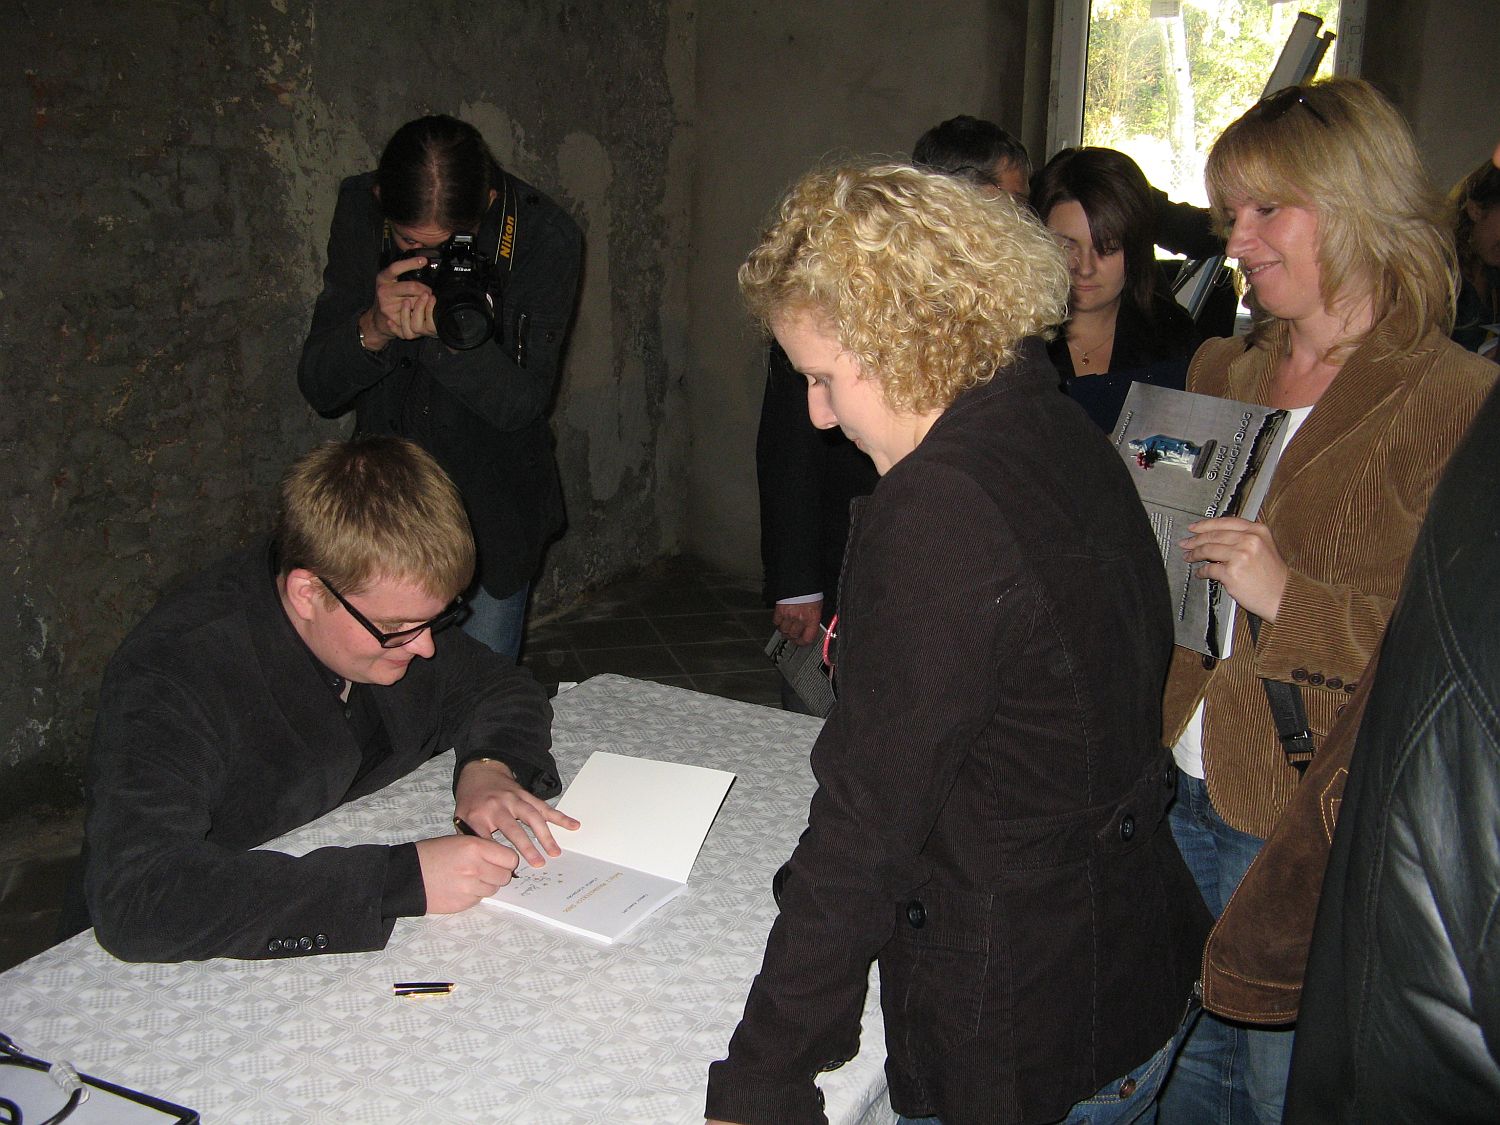 W dniu prezentacji publikacji kady liczy mg na autograf i dedykacj od Tomasza Kowalskiego, 20.10.2012 r.